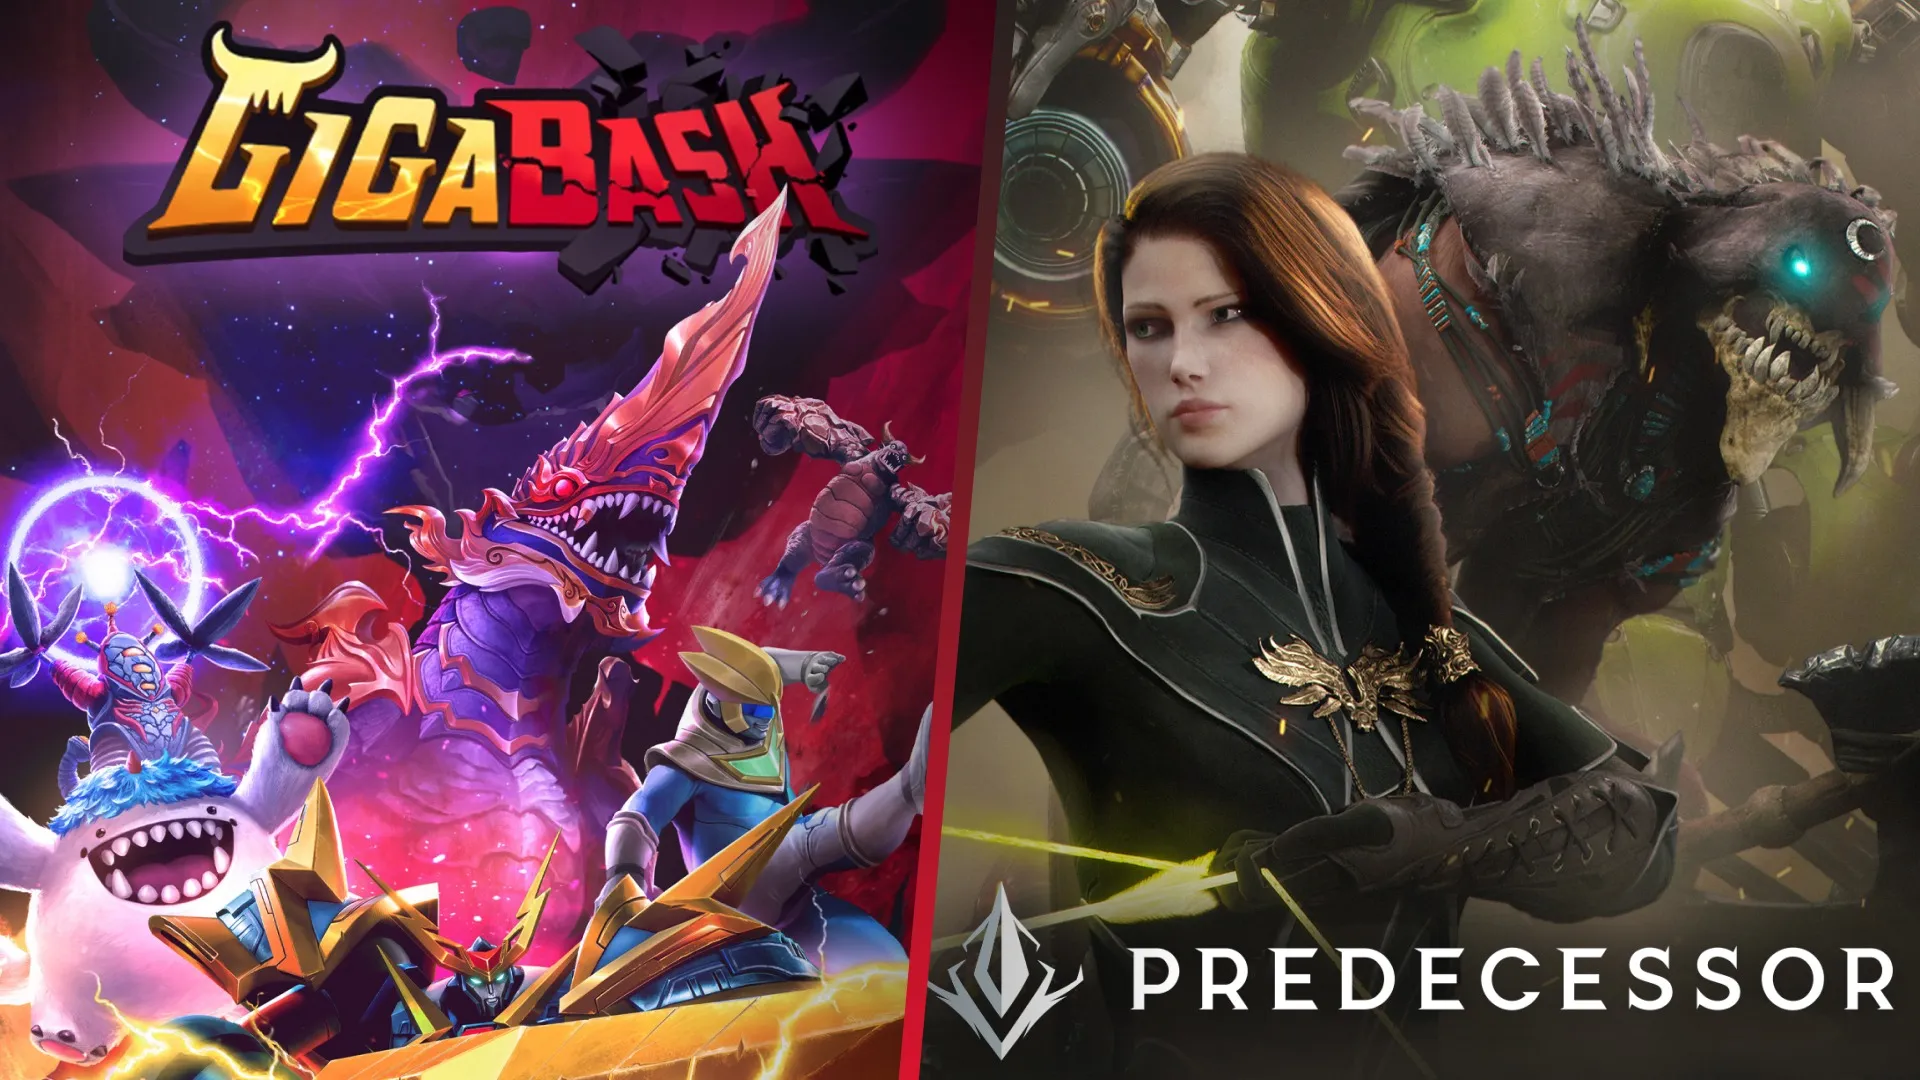 Téléchargez GigaBash et Predecessor gratuitement sur Epic Games Store